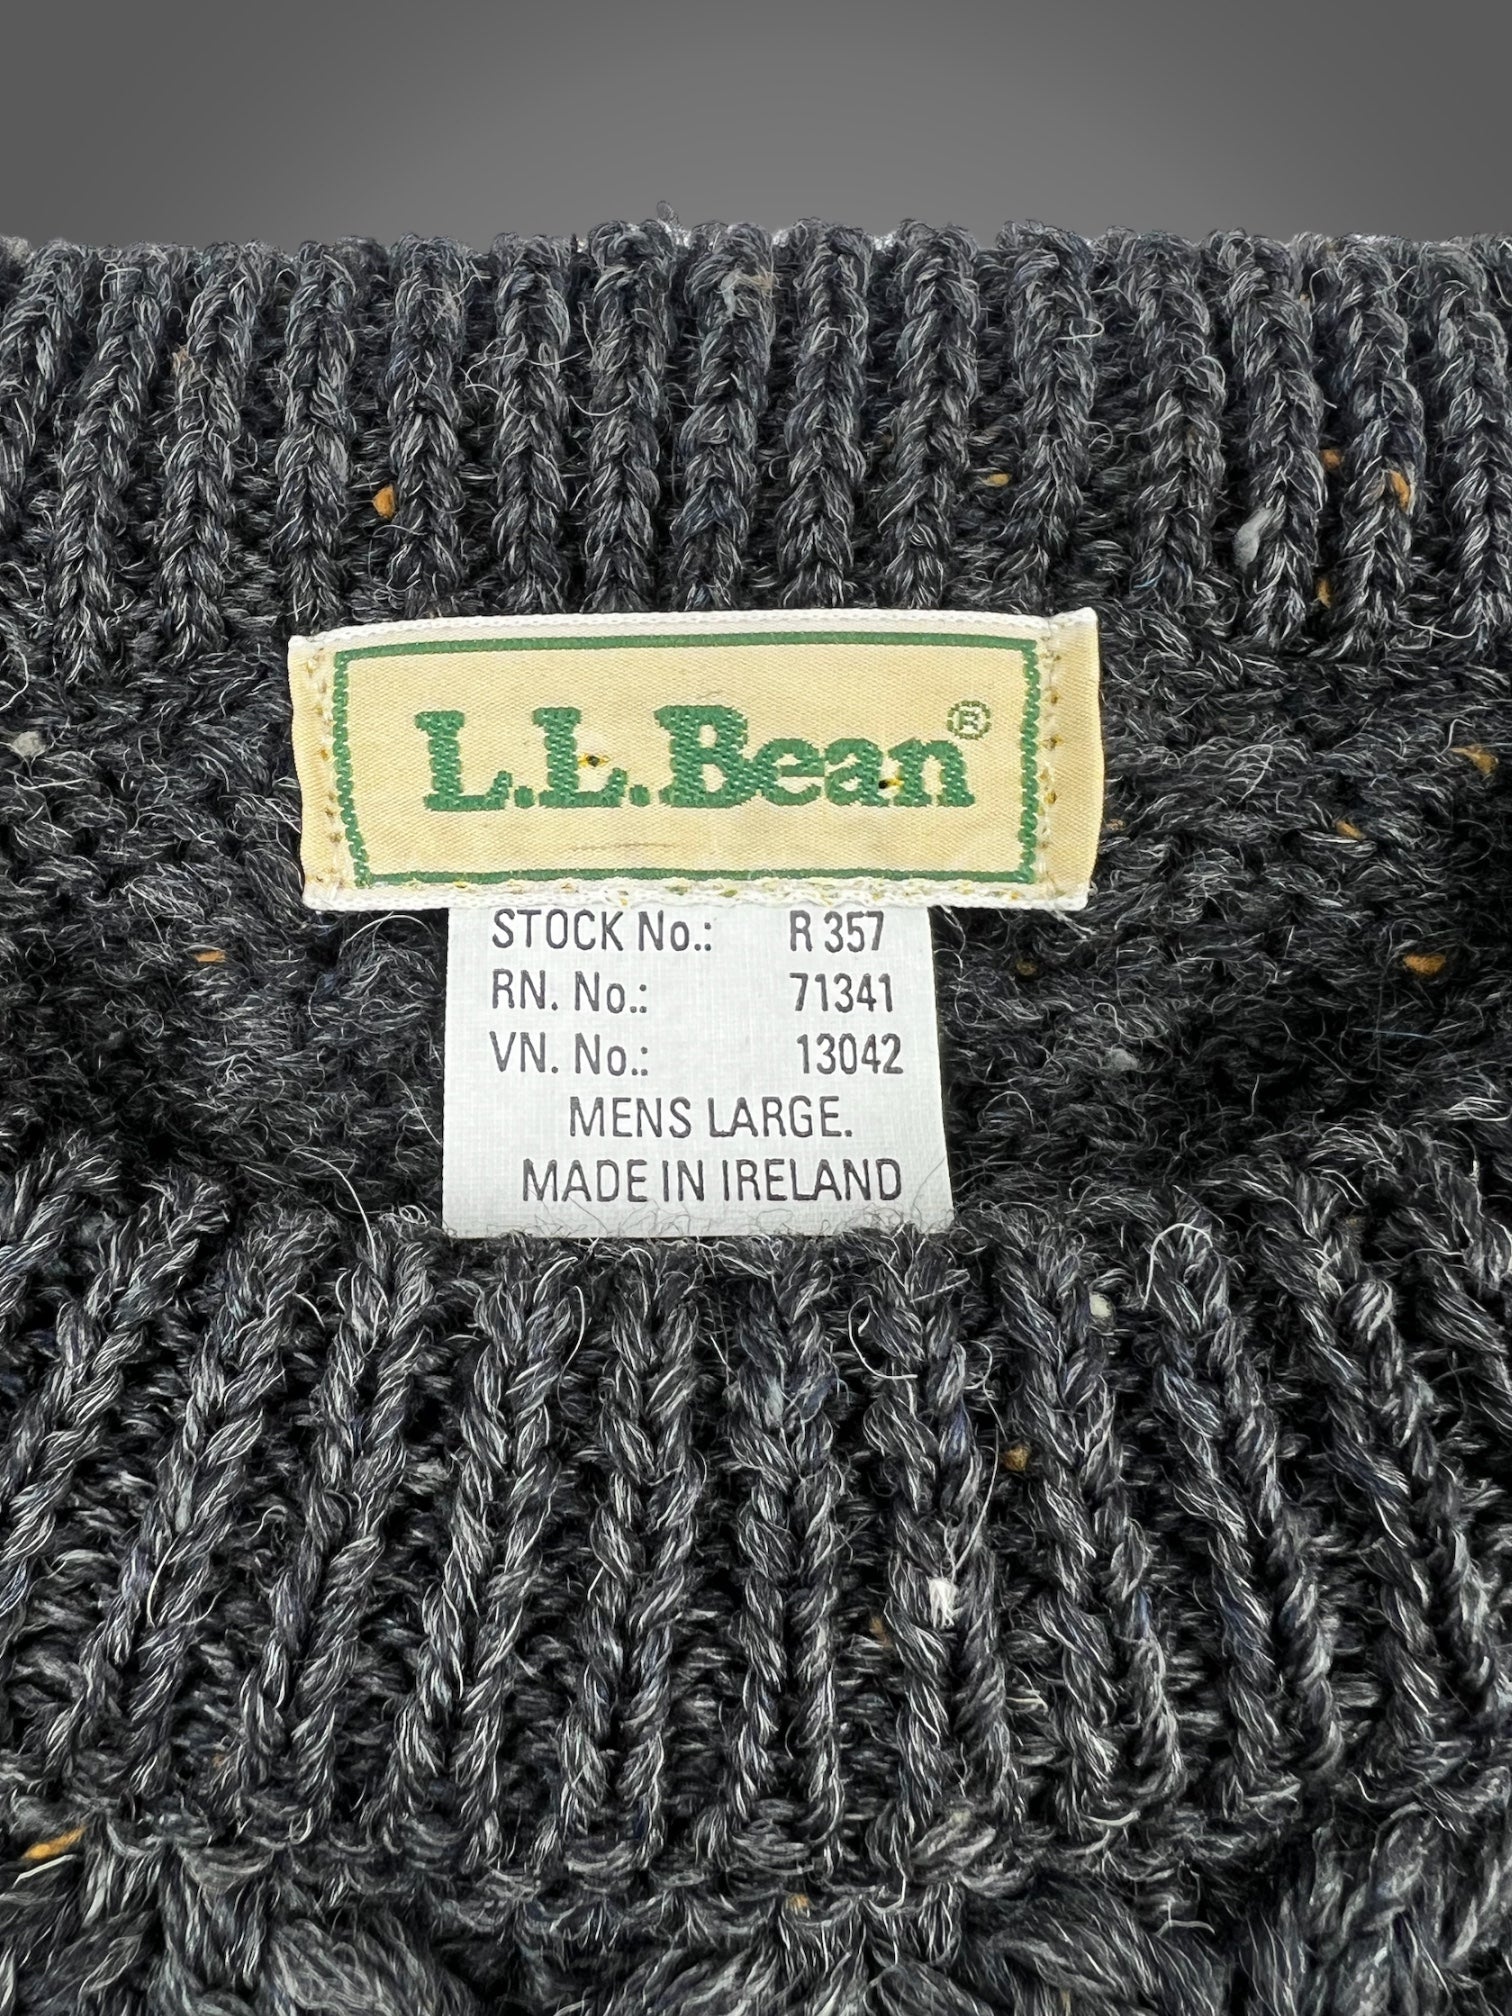 90s LL Bean Irish wool cable knit fisherman sweater fits XL